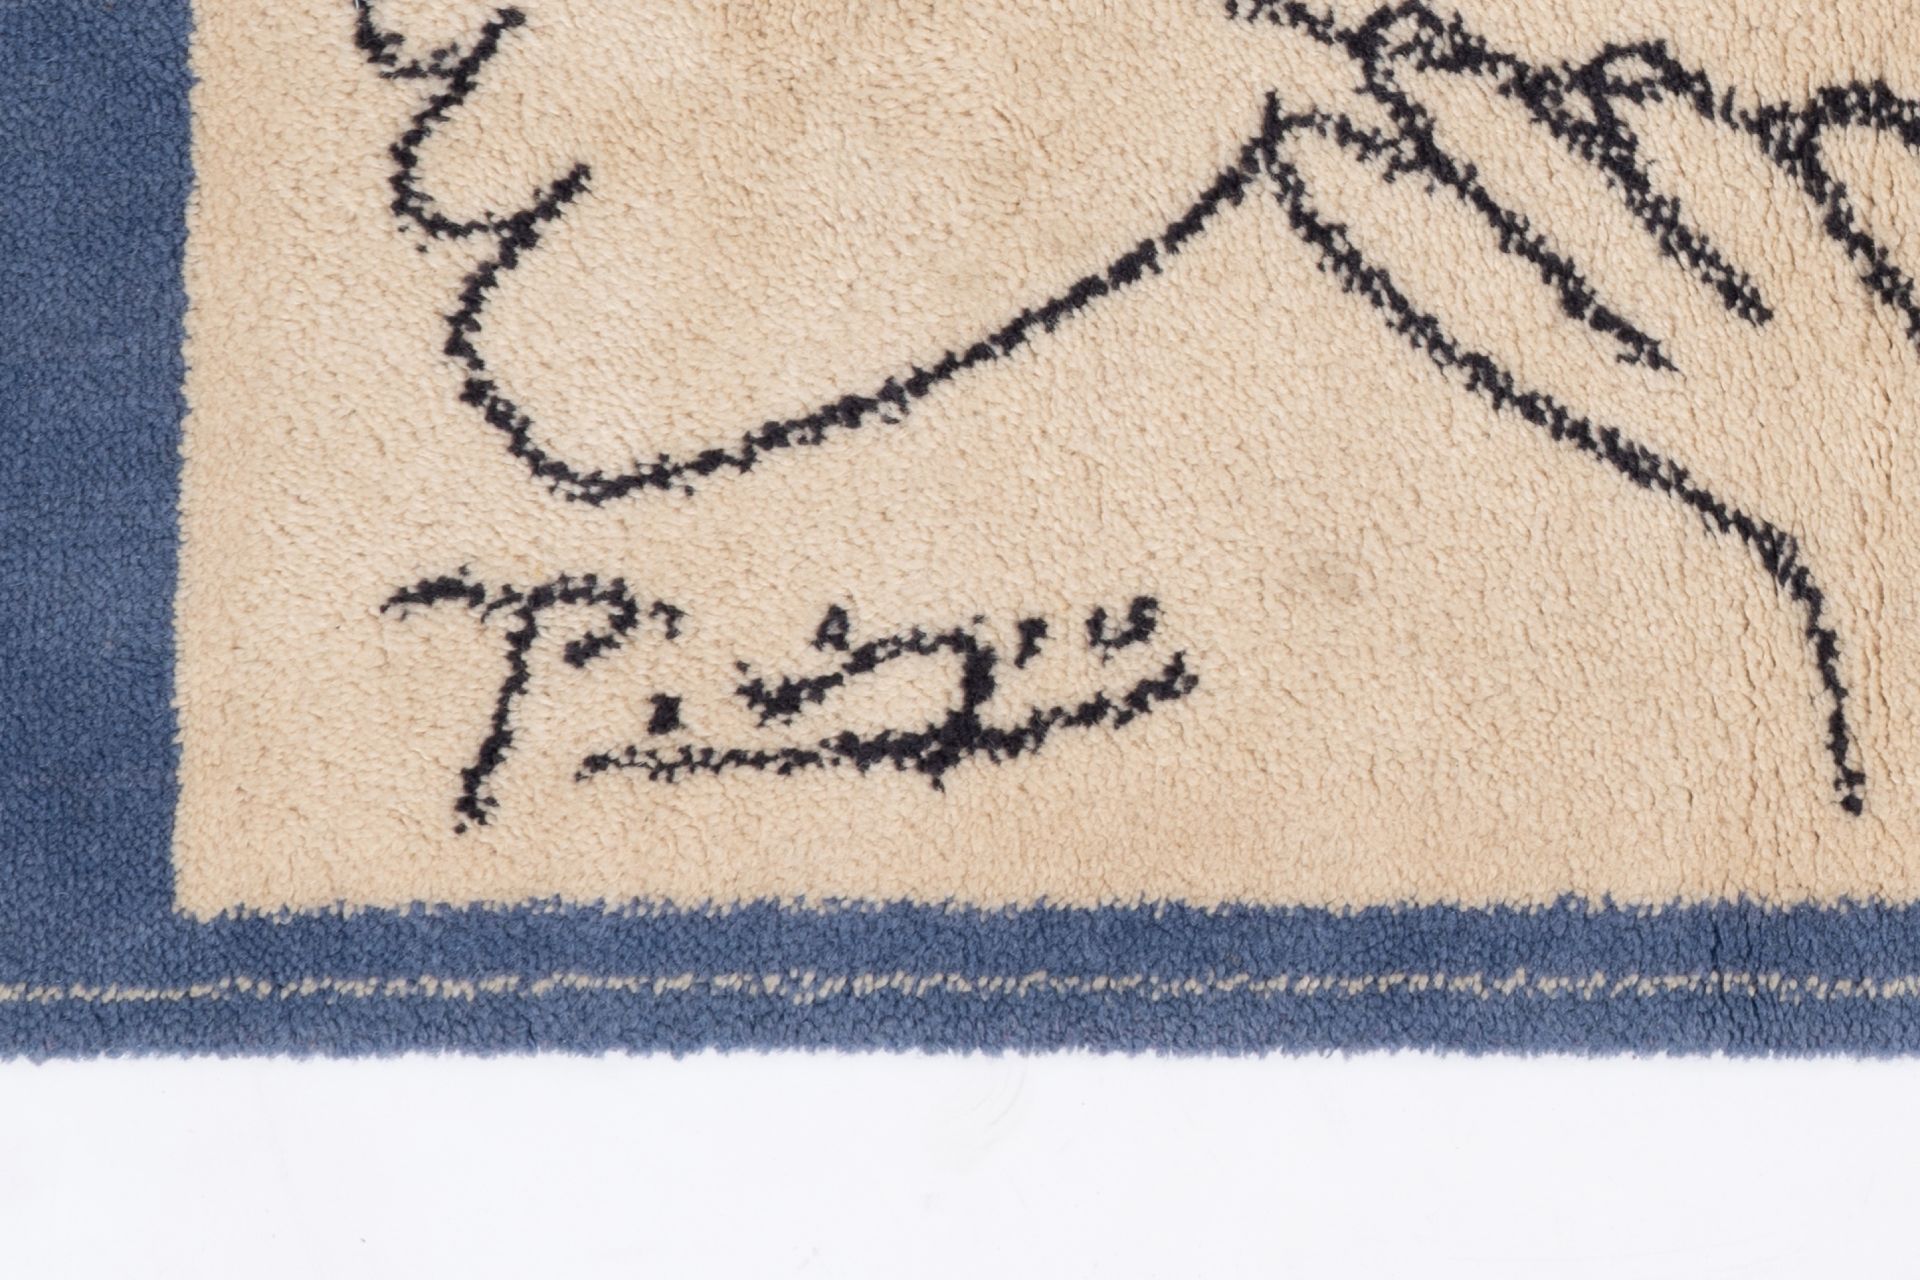 Pablo Picasso (1881-1973, after): 'Le visage de la paix', wool carpet - Image 3 of 3